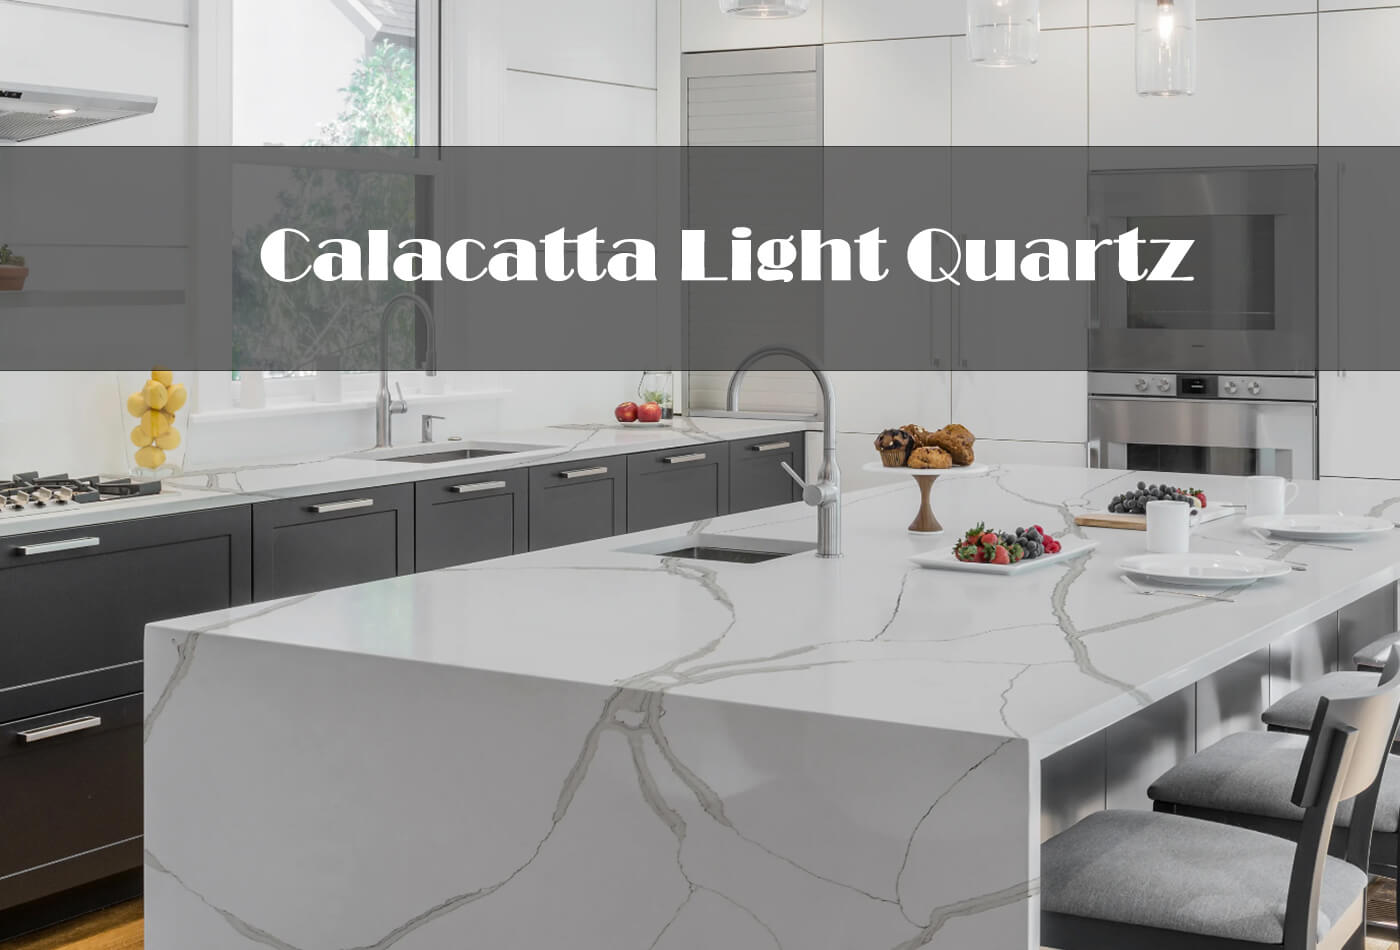 Exclusive Calacatta Light Quartz For Sale In The UK!